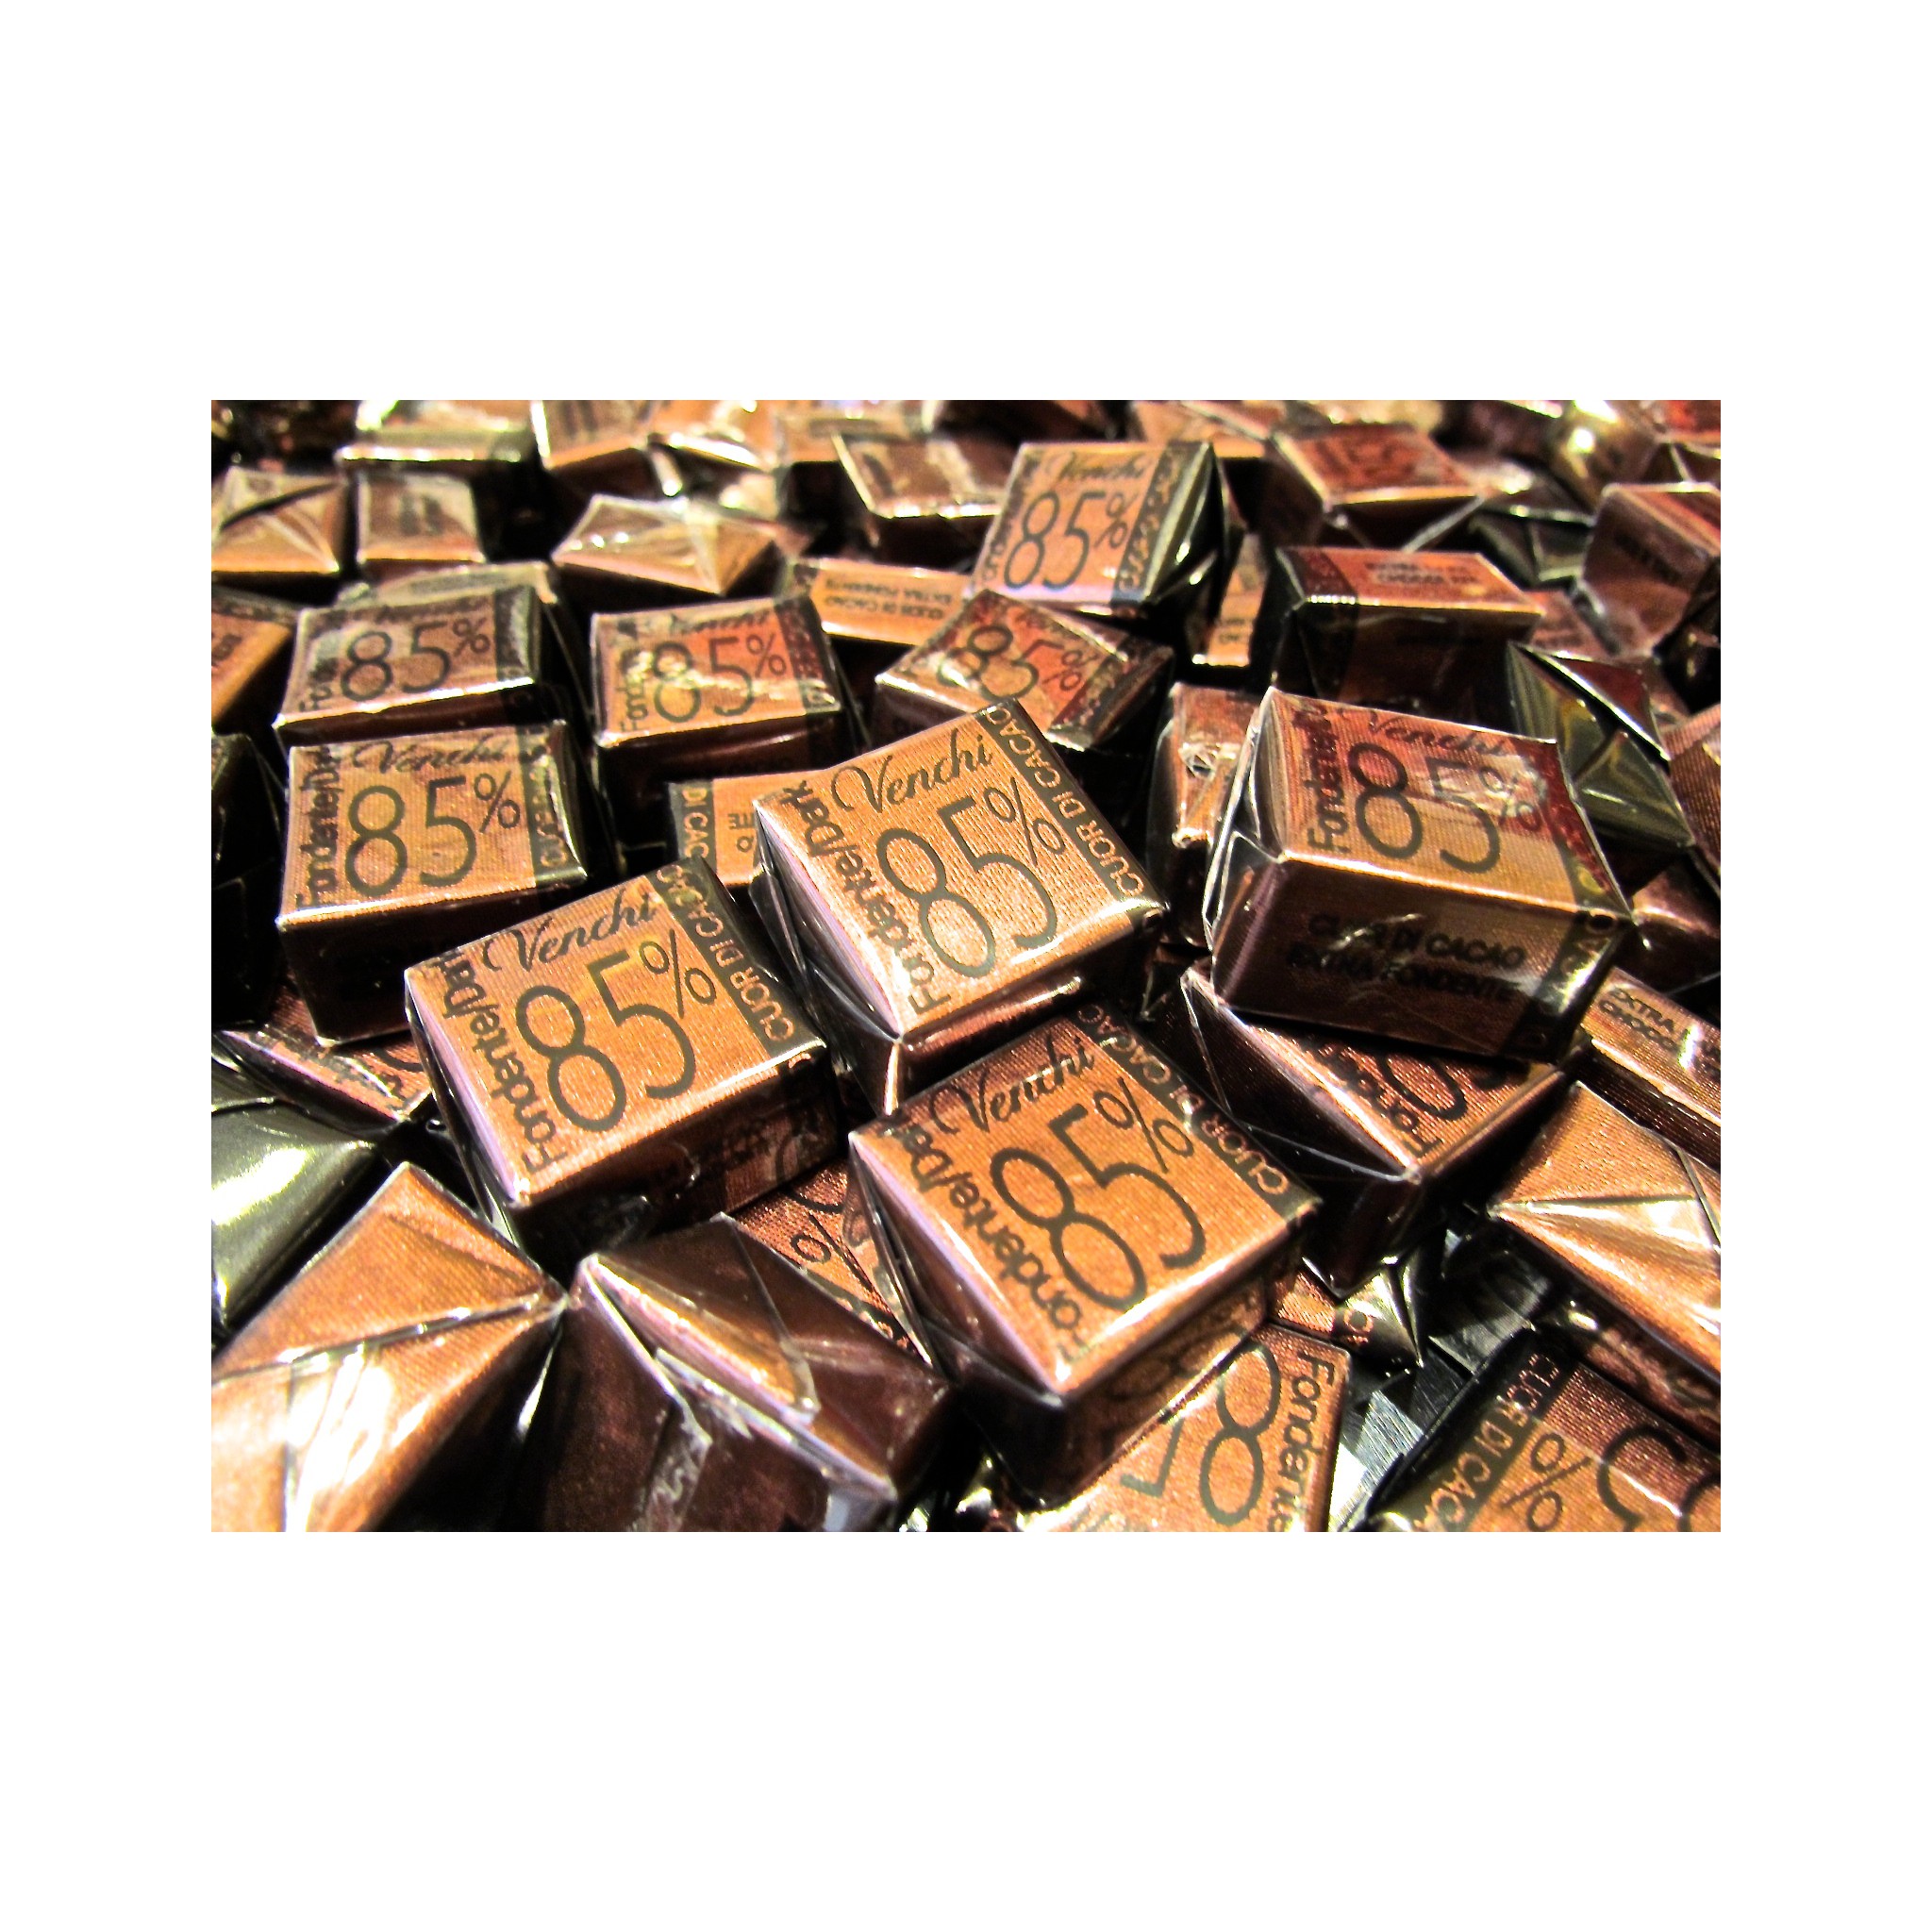 Vendita online Cioccolatini Venchi di cuneo Novità fondente 85% di